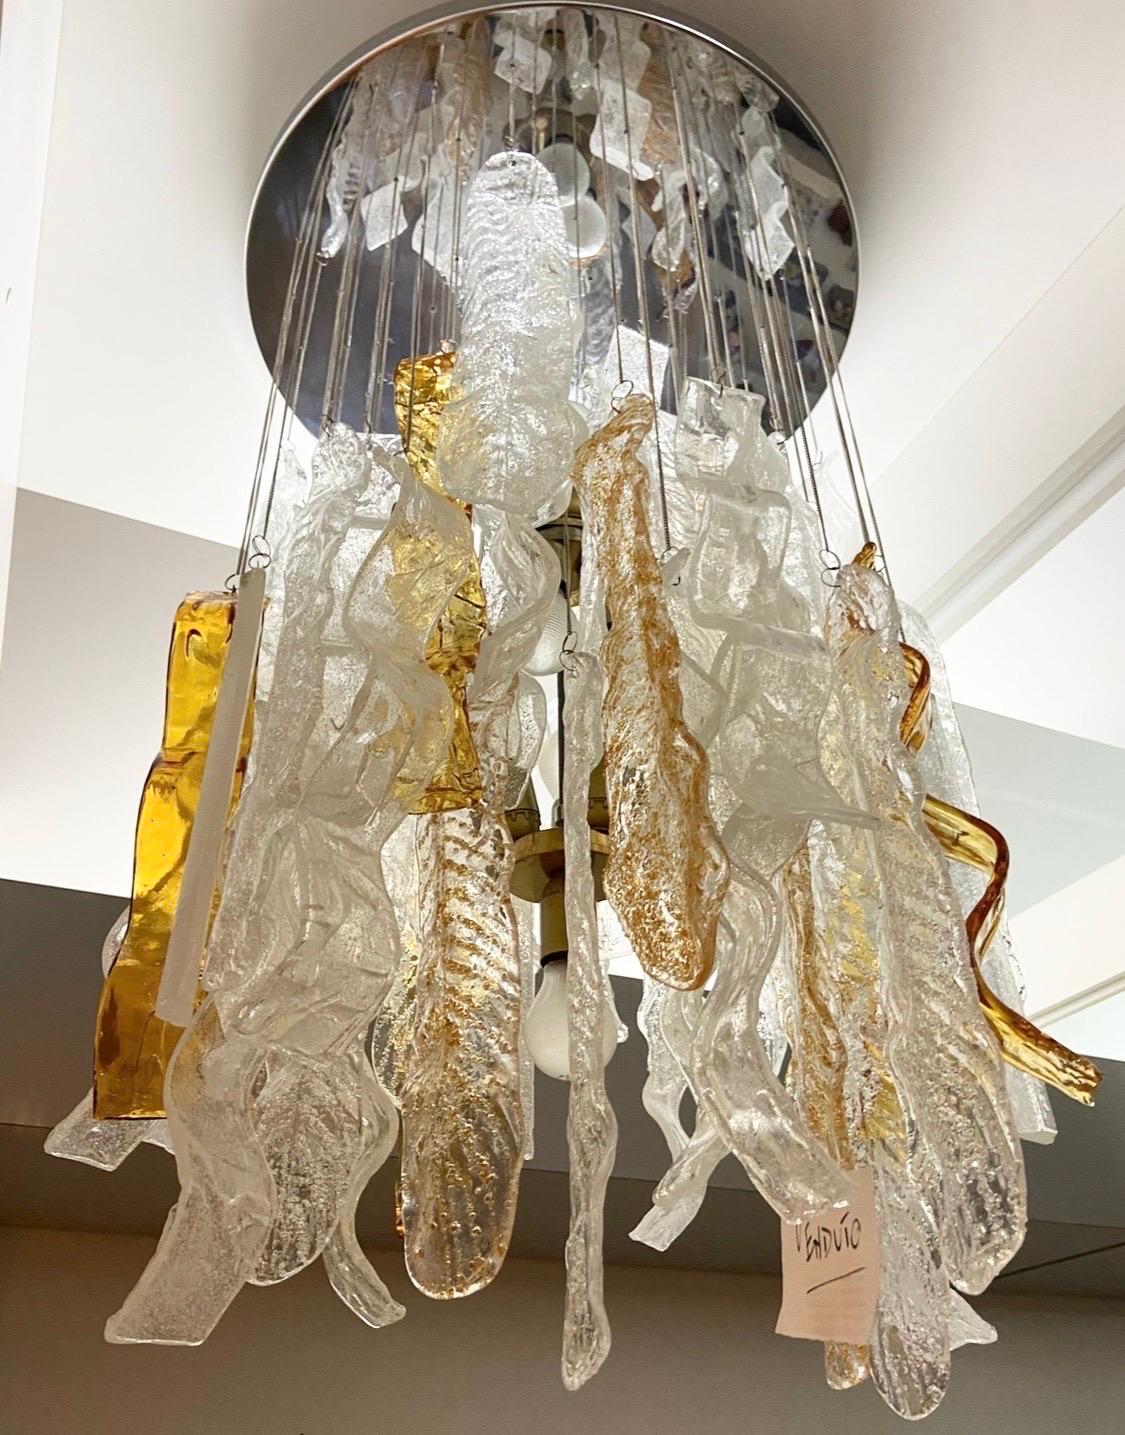 Ein großer Kronleuchter aus weißem und braunem Murano-Glas, der in den siebziger Jahren von Mazzega entworfen und hergestellt wurde, verfügt über fünf verschiedene Arten von großen Murano-Glasanhängern, die ein erstaunliches Raumlicht erzeugen. Die